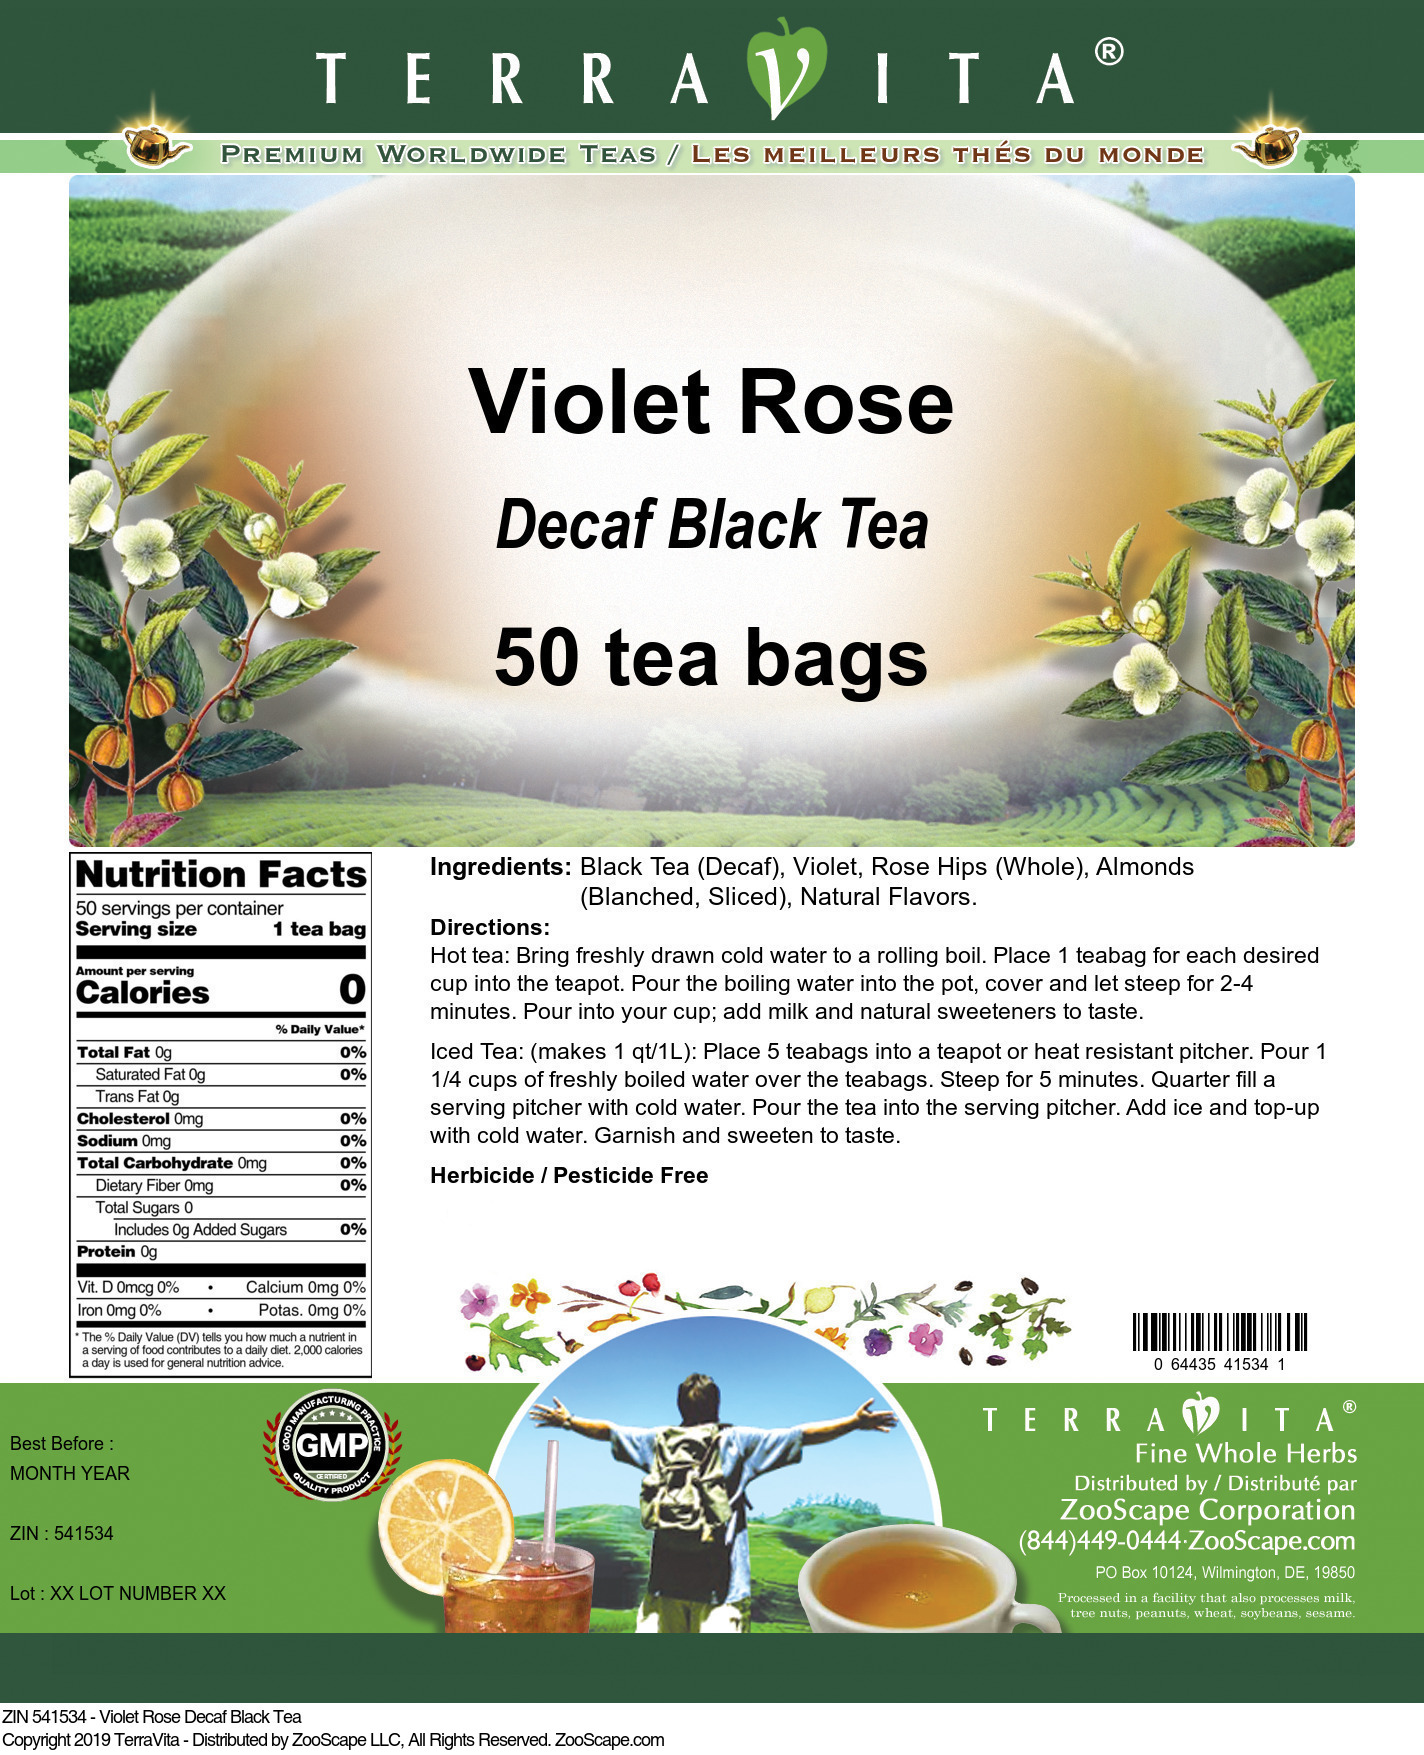 Violet Rose Decaf Black Tea - Label